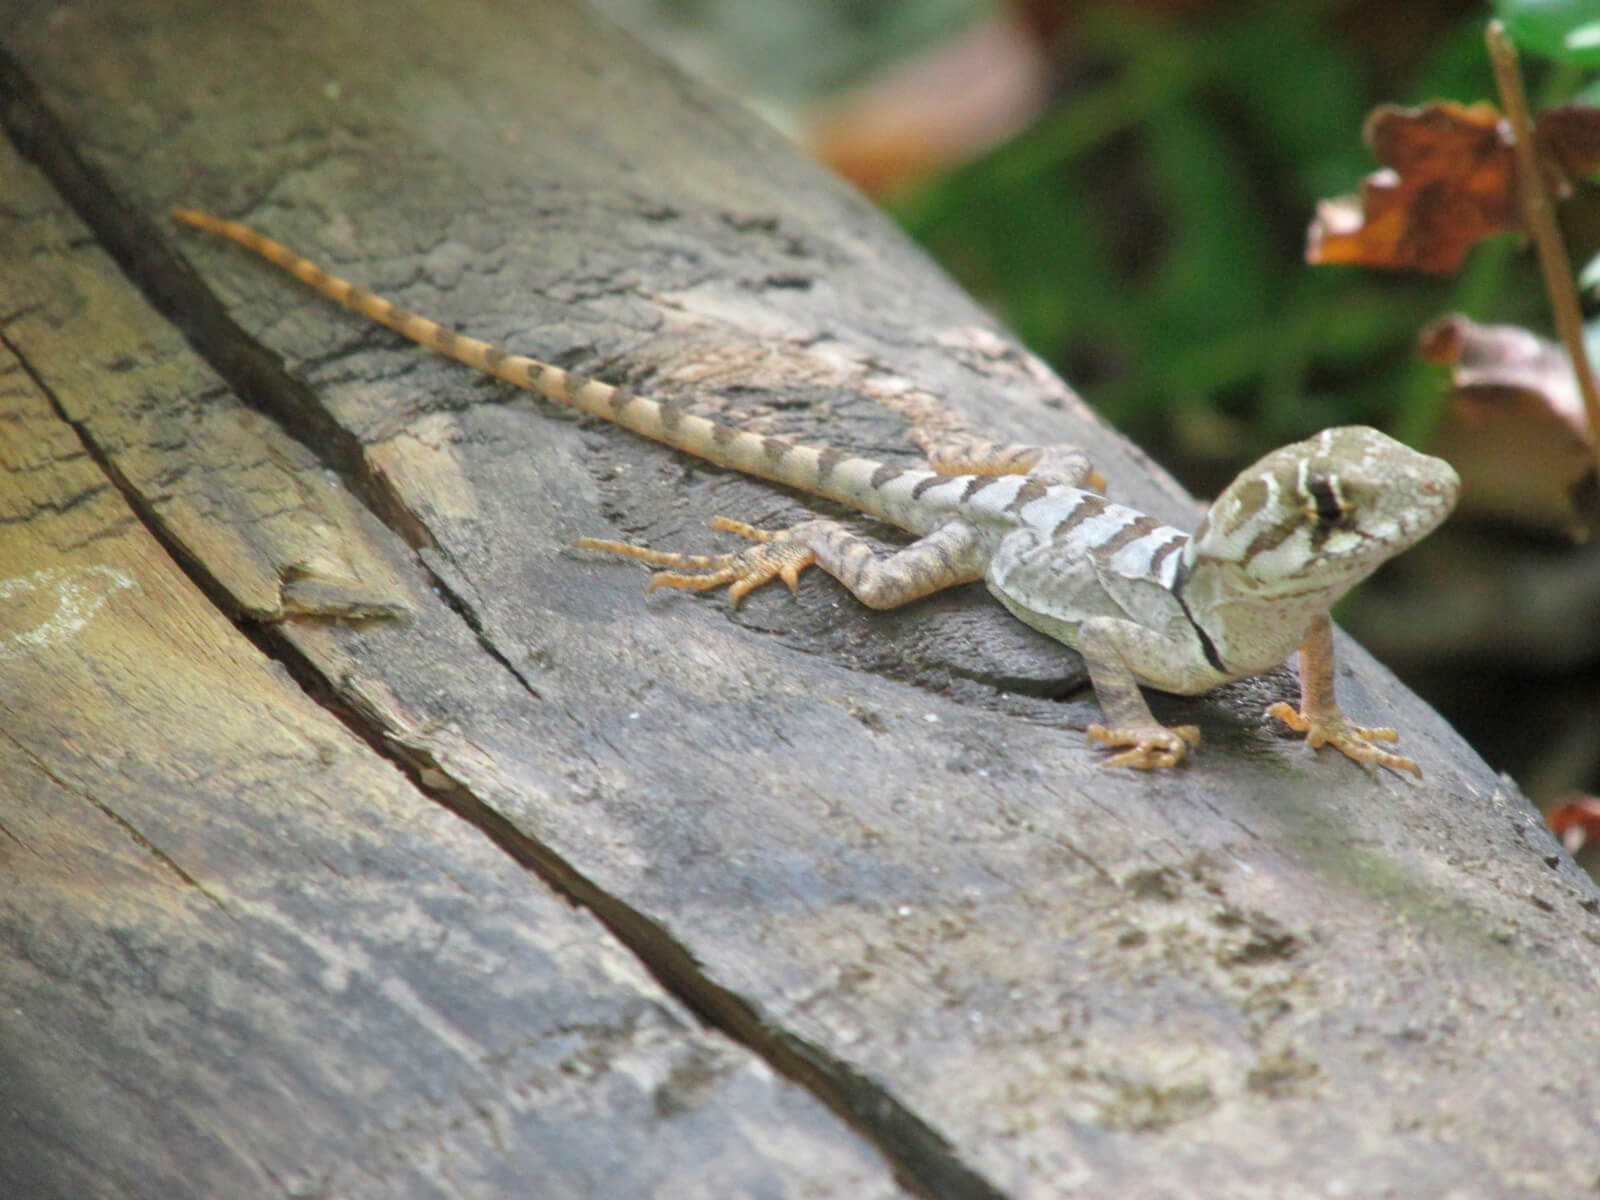 Guardaparques de Río Clarillo hallan lagarto que se creía extinto en la zona